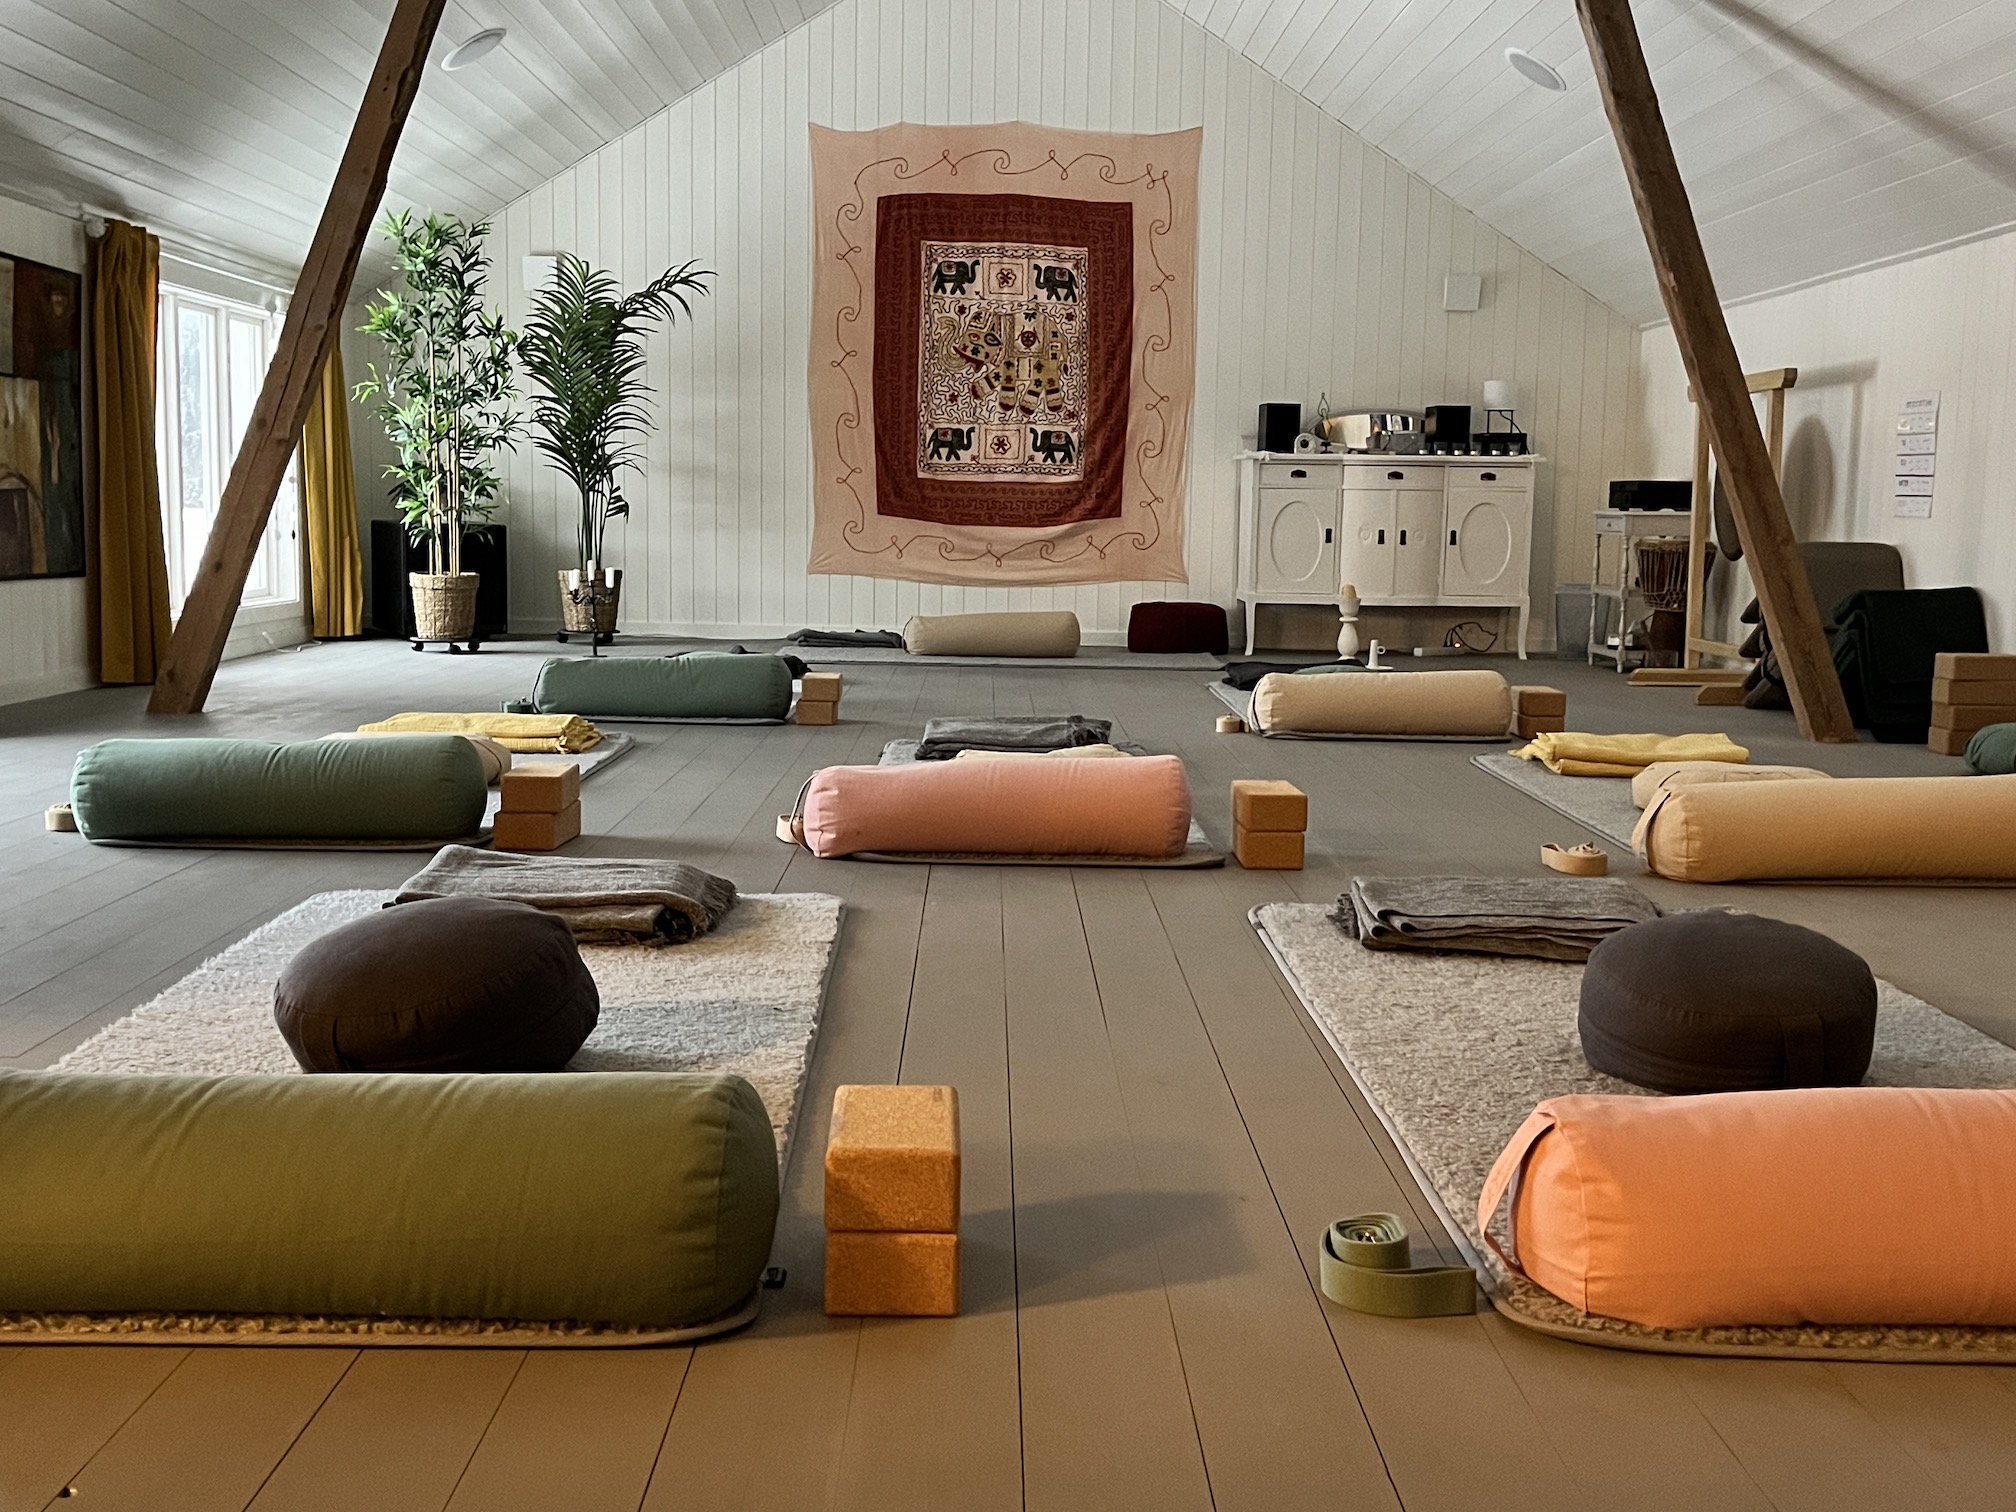 Ett rum med yogamattor